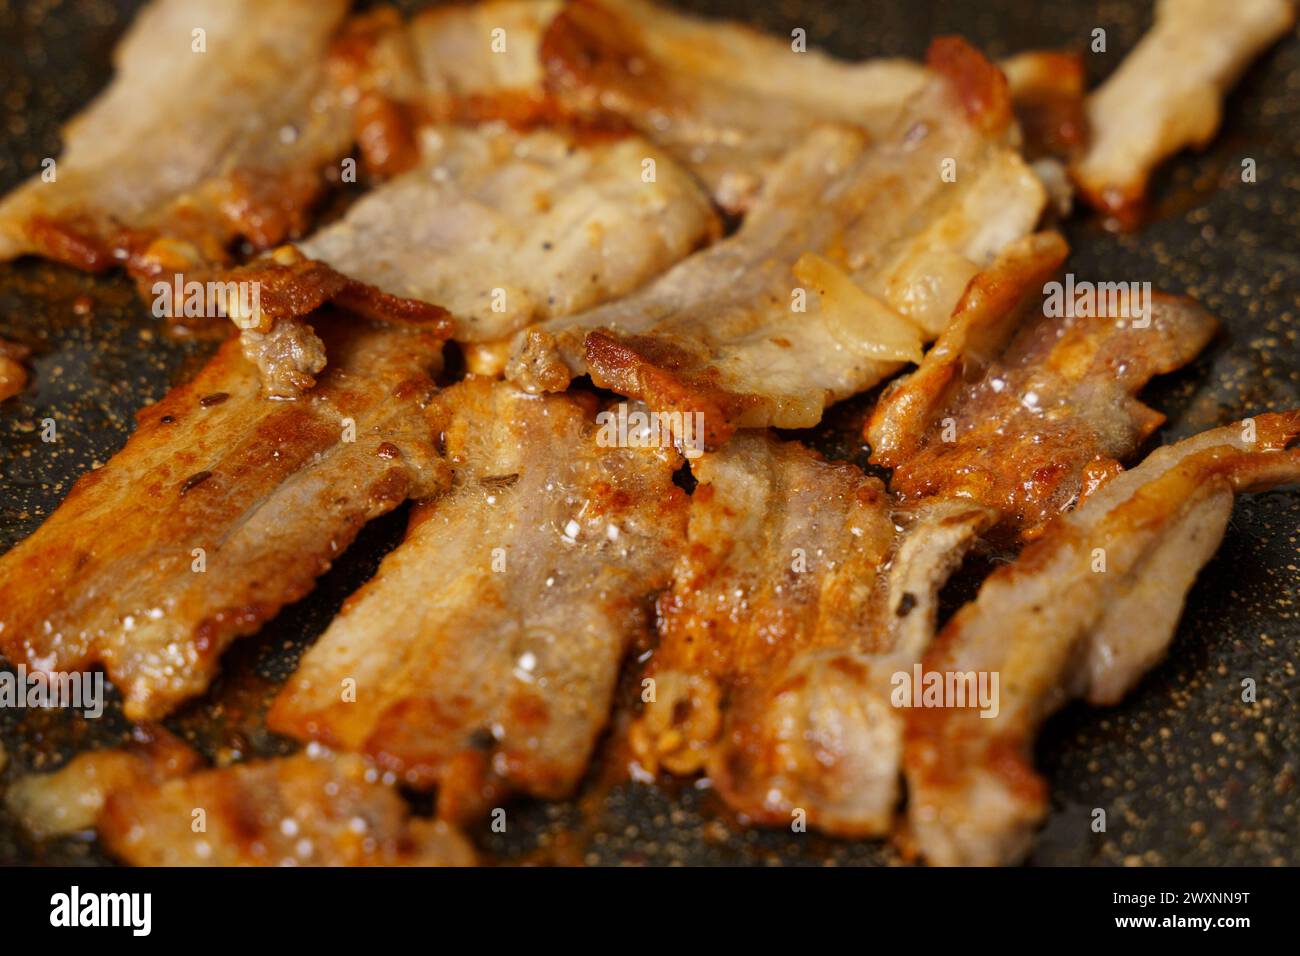 Eine detaillierte Ansicht von rohem Fleisch, das auf einer heißen Pfanne brutzelt und anbraten kann, mit sichtbaren Grillmarkierungen. Stockfoto